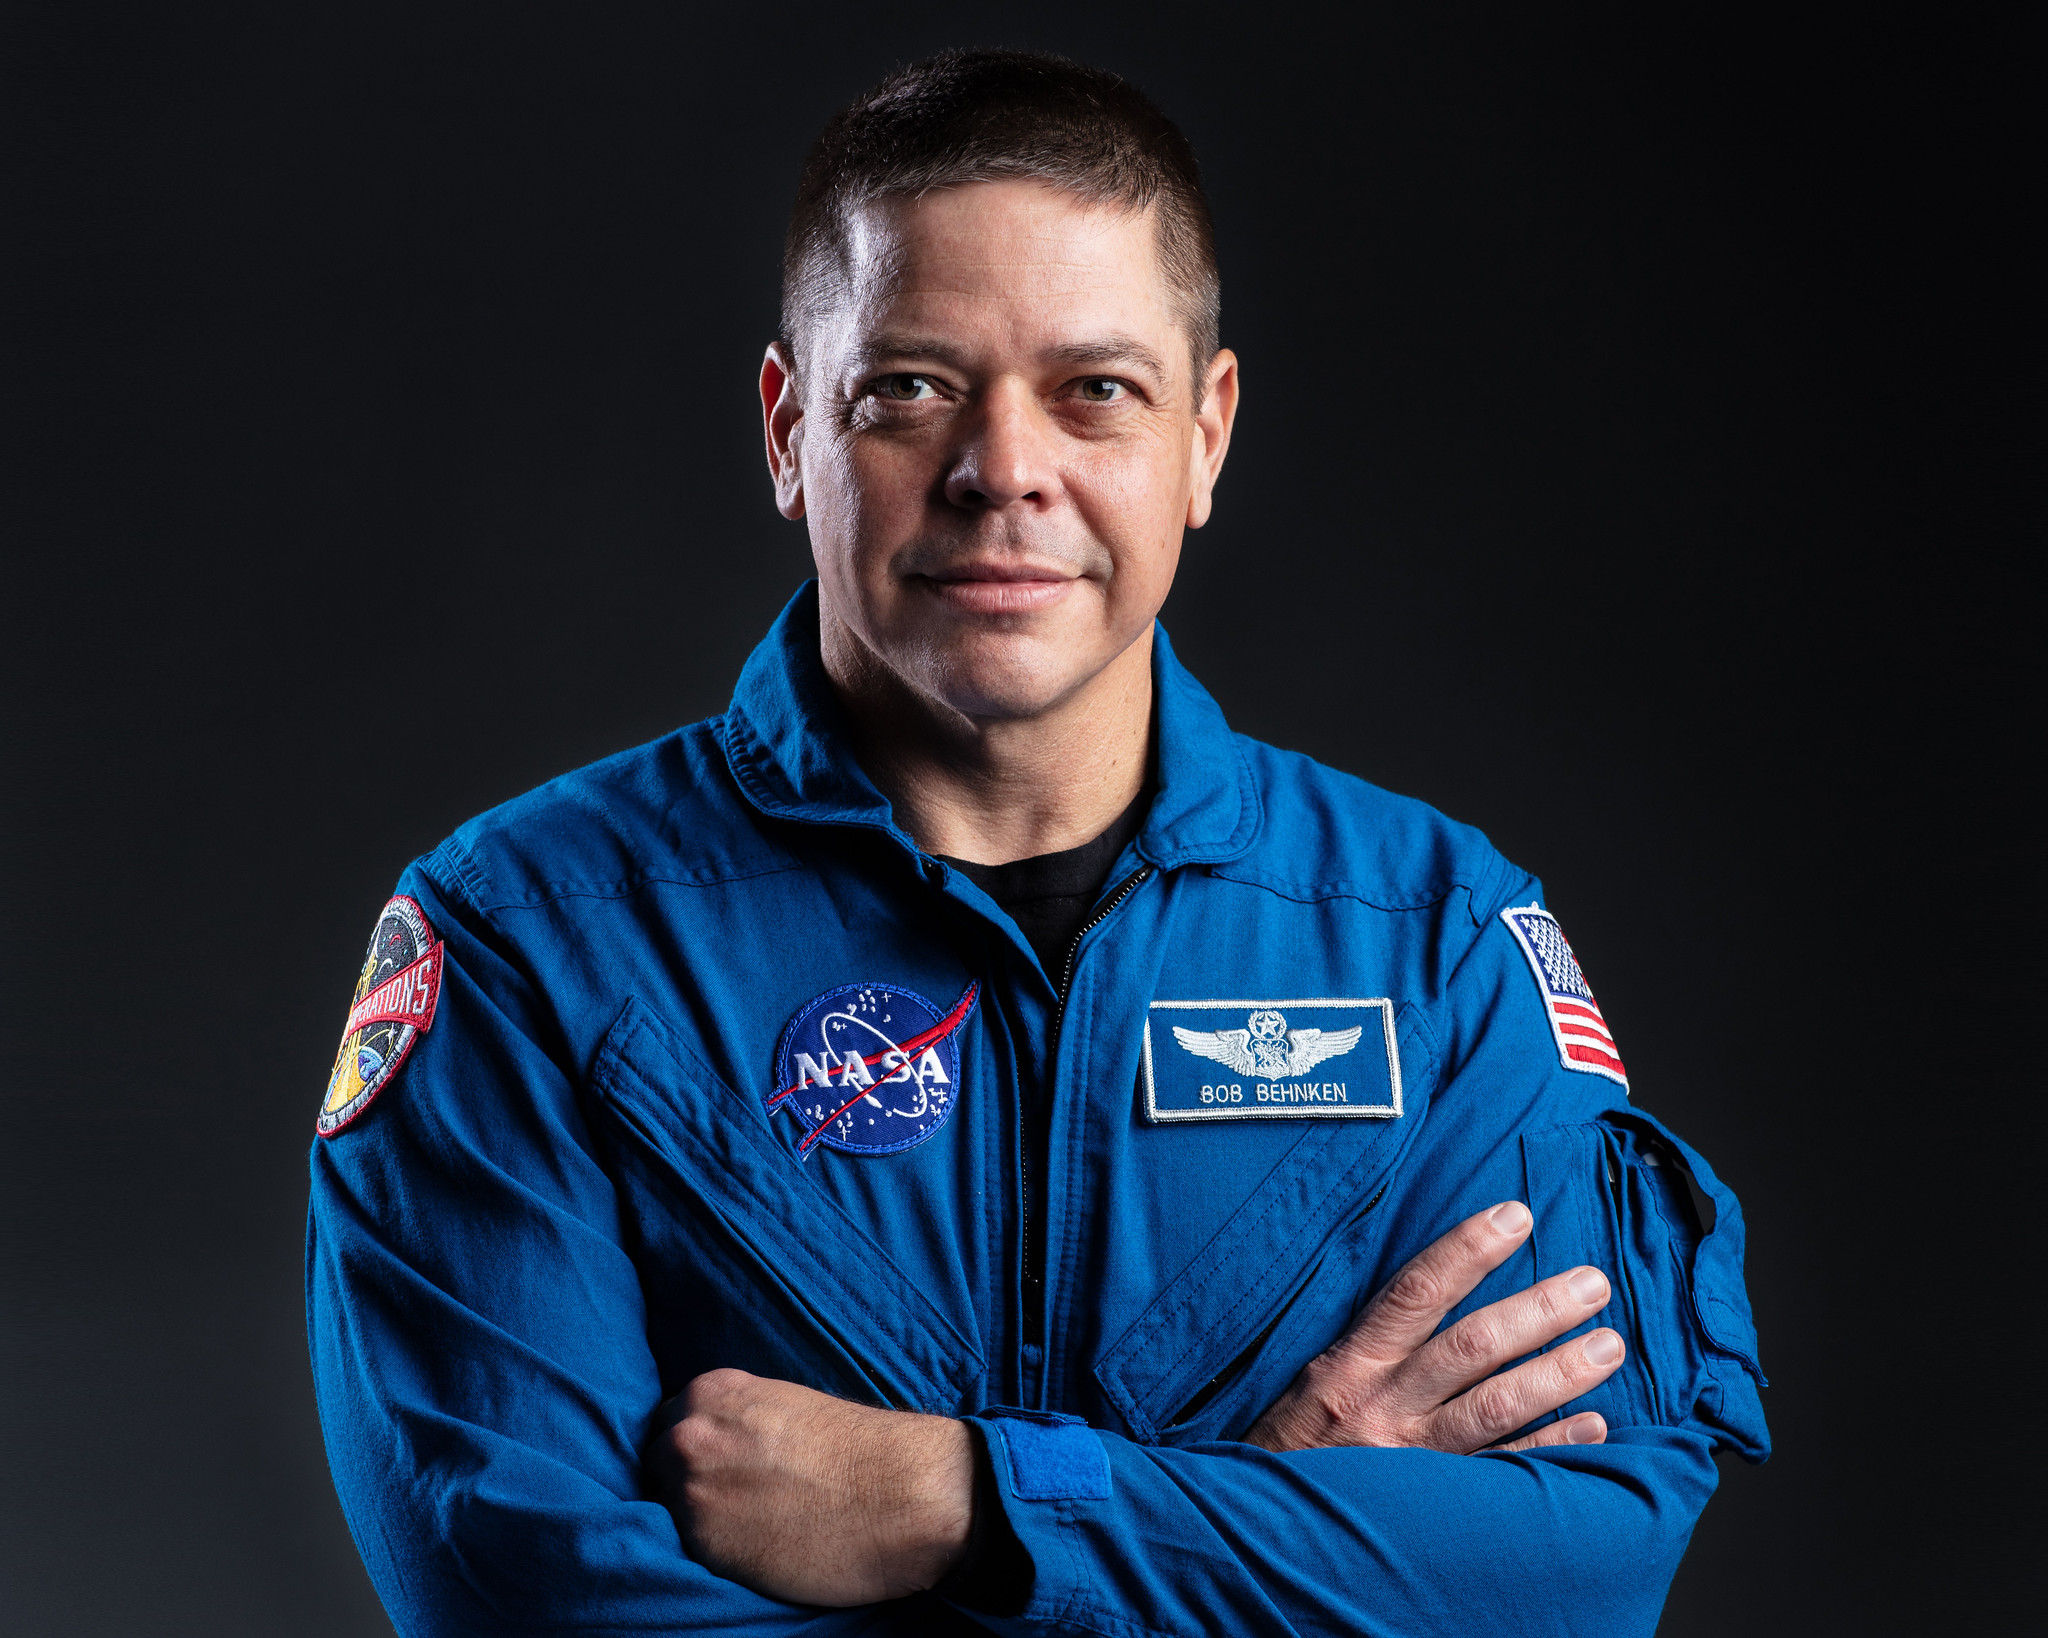 NASA astronaut Robert Behnken.